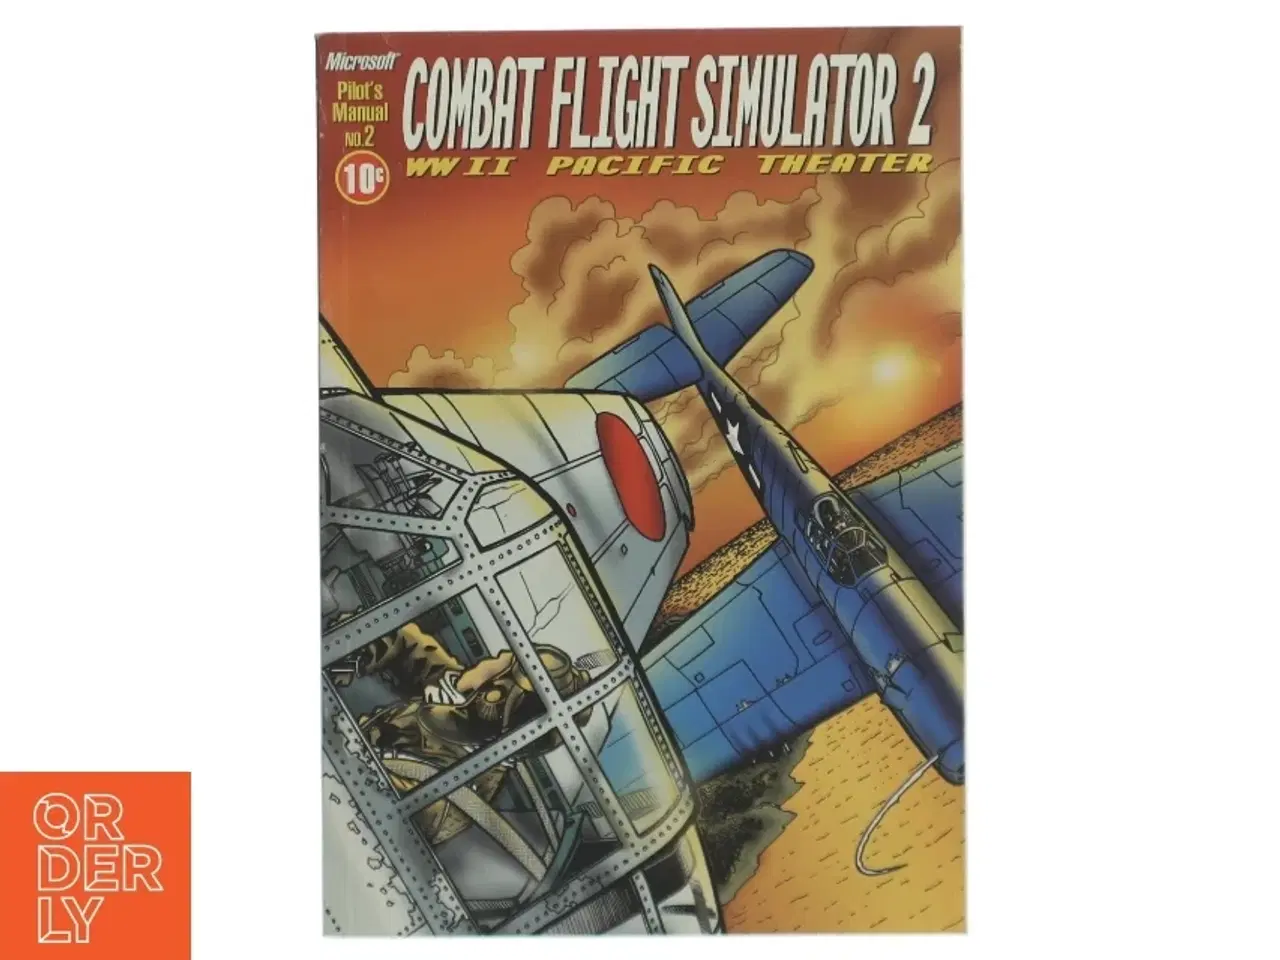 Billede 1 - Combat Flight Simulator 2 Manual fra Microsoft